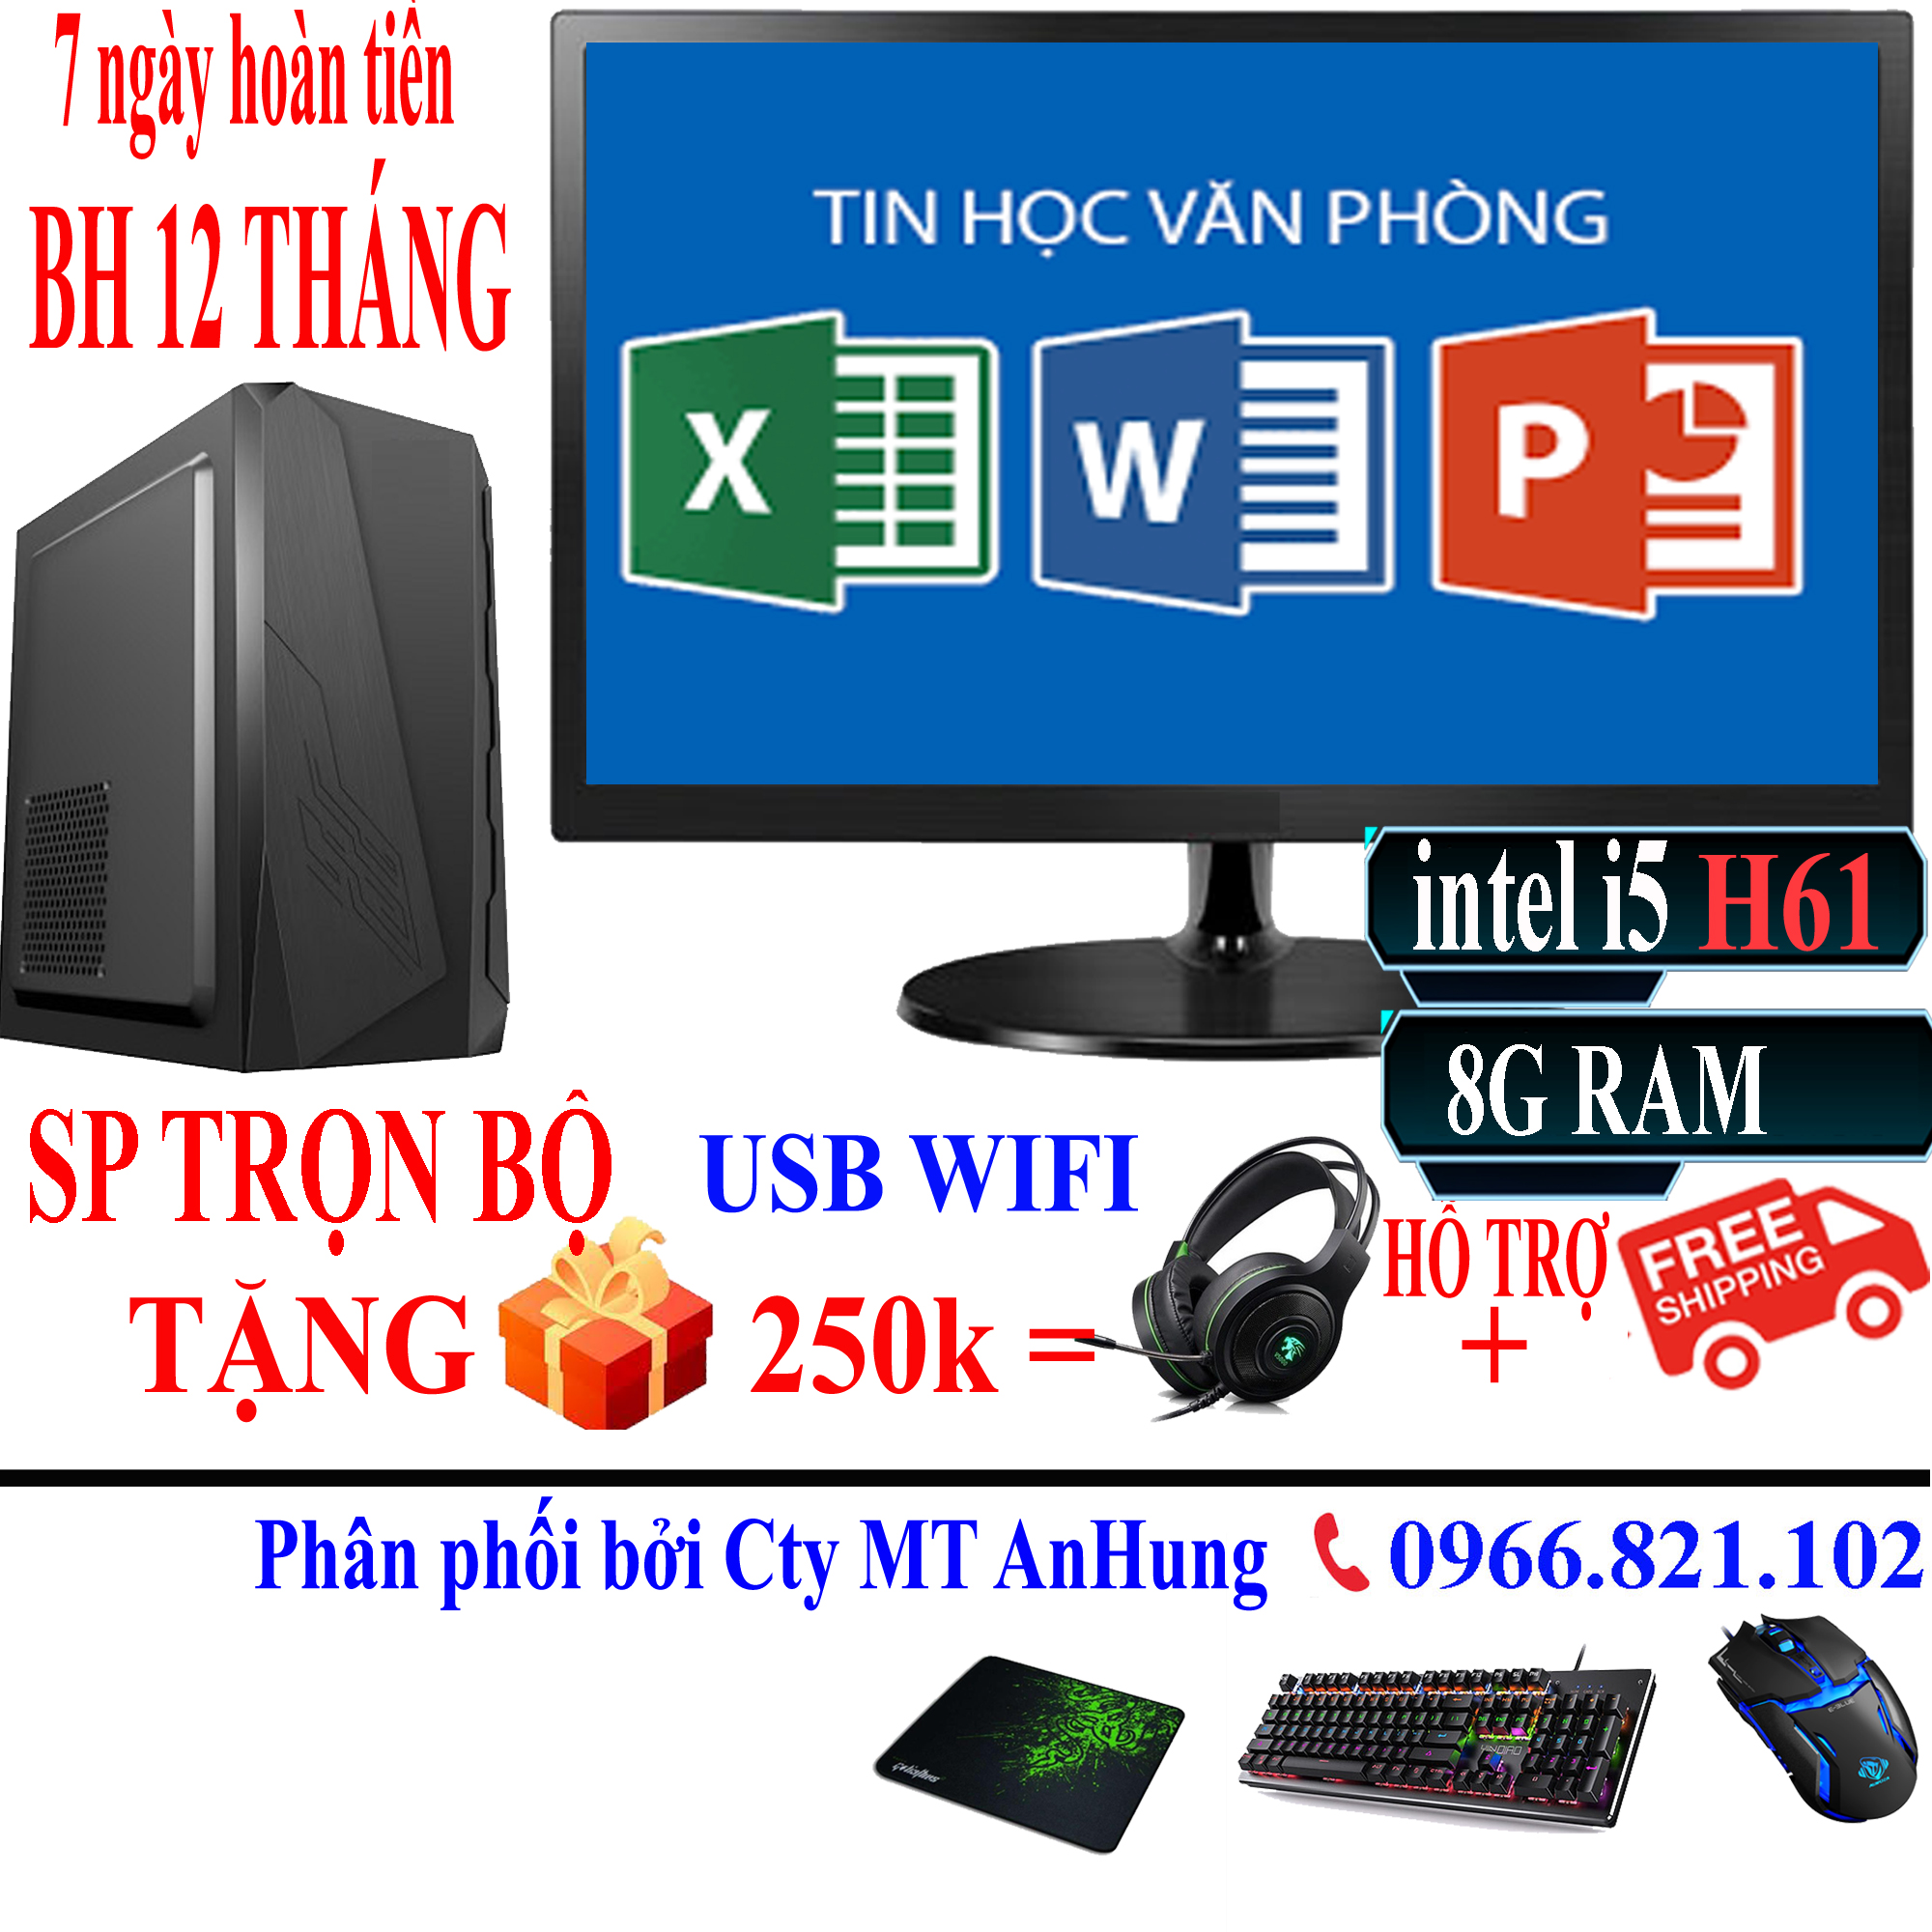 Hình ảnh Bộ máy tính để bàn VLimited cao cấp i5 3330/8G/ SSD/HDD/ Văn Phòng, GAME sản phẩm trọn bộ - Hàng chính hãng